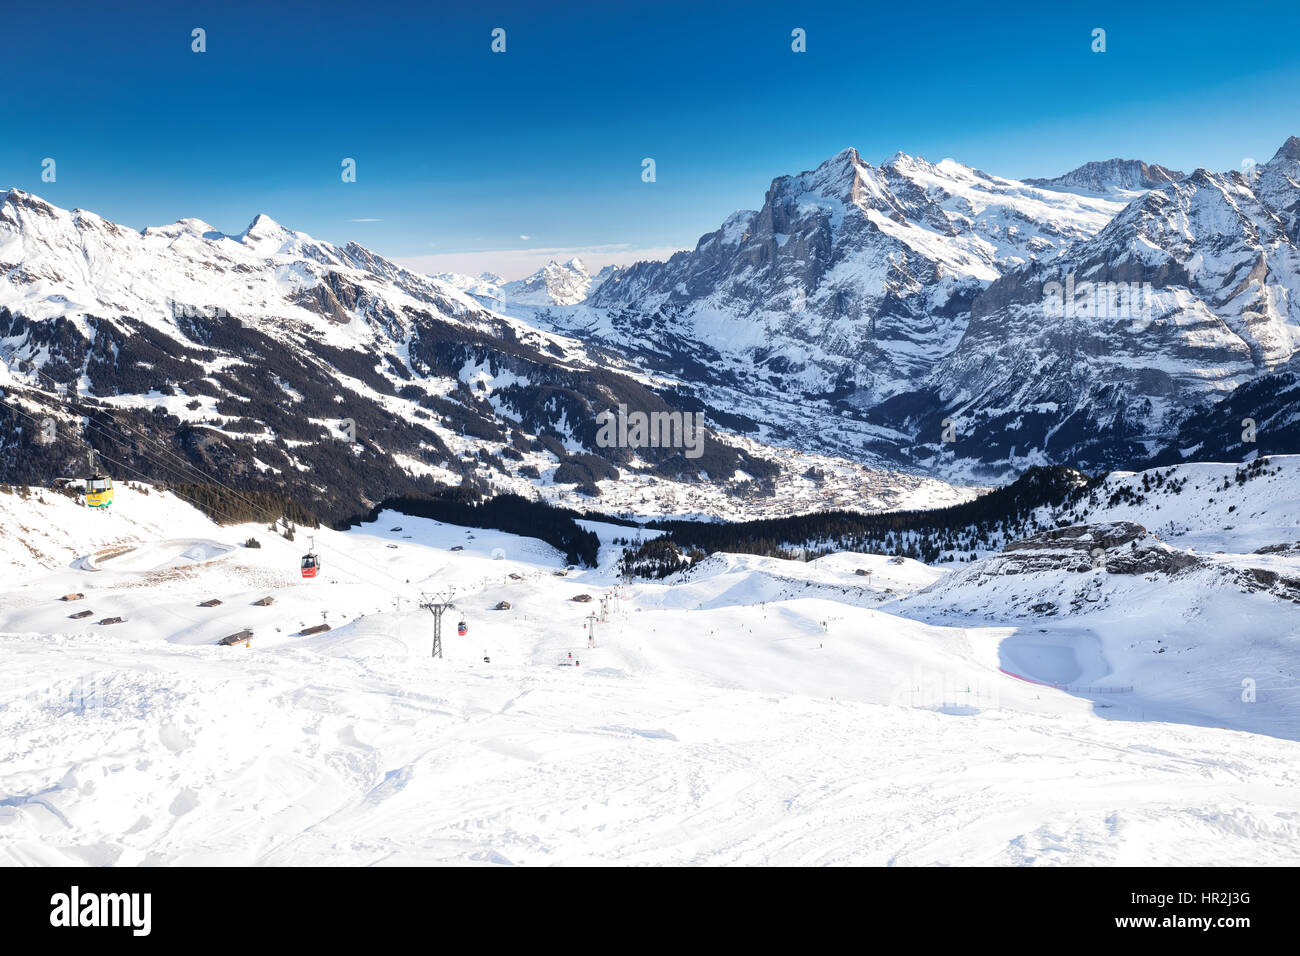 Jungfrau ski Resort unter Eiger, Monch und Jungfrau Gipfeln in Grindelwald, Berner Oberland, Schweiz, Schweizer Alpen. Stockfoto